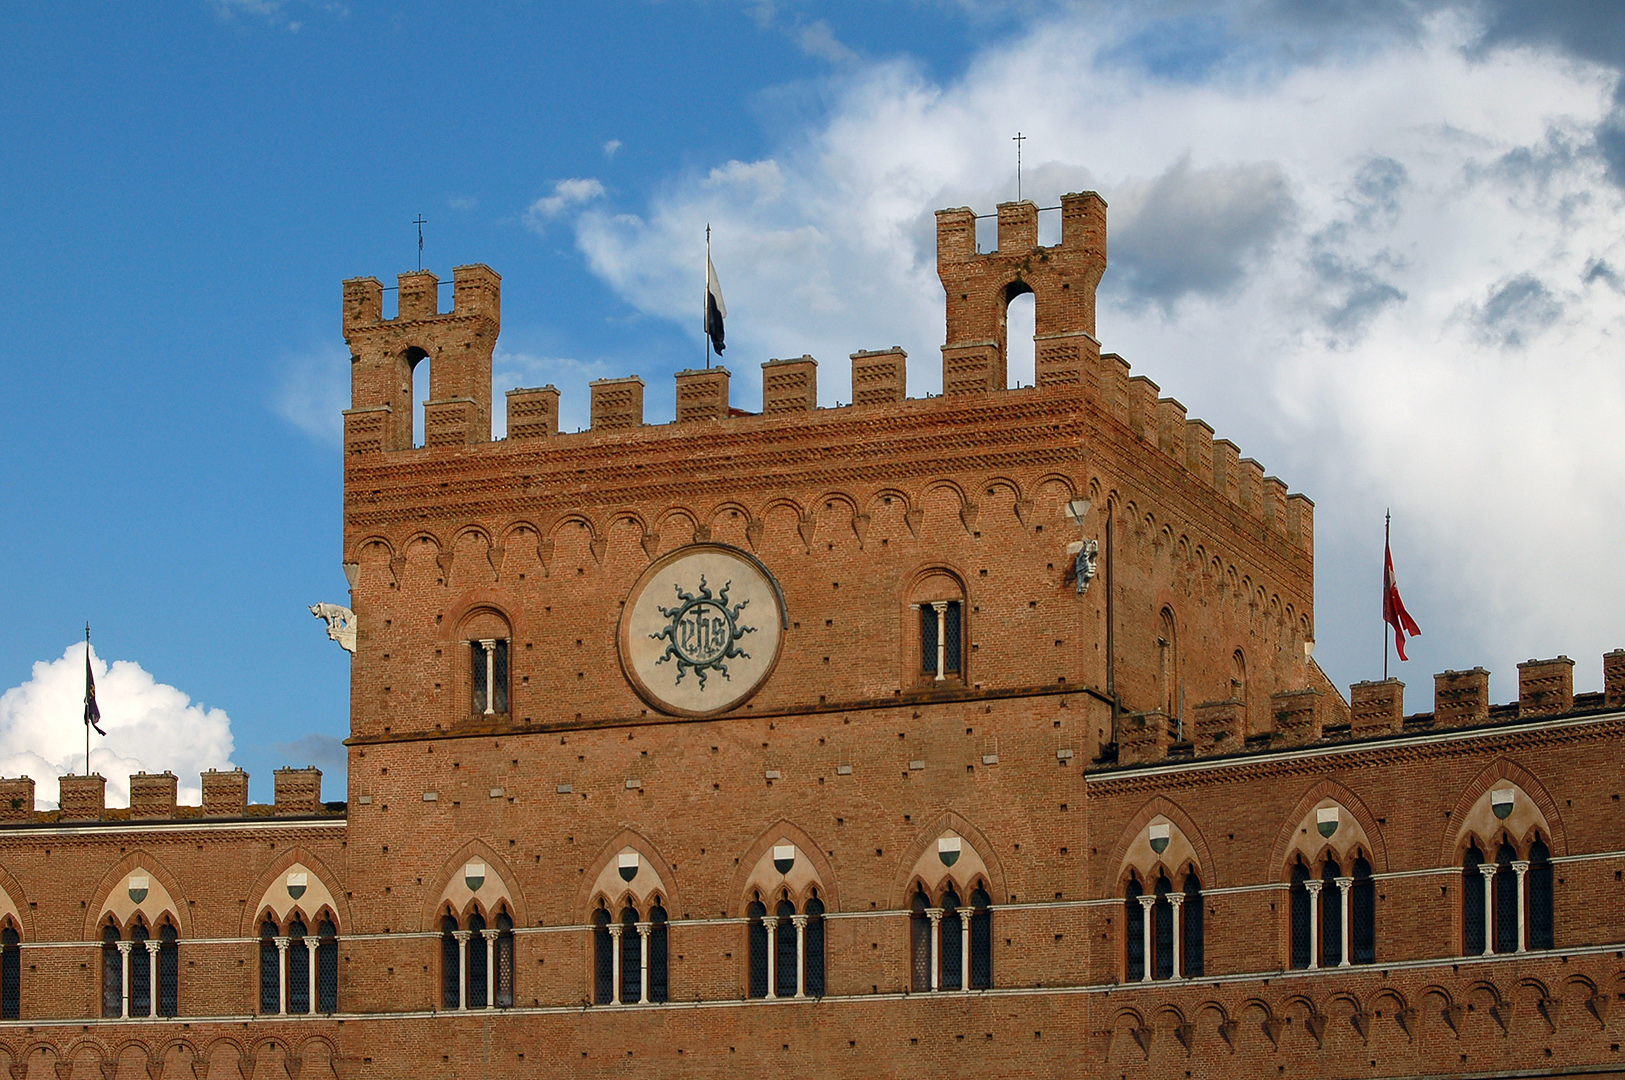 Palazzo Pubblico, Il Campo, Siena, Toscane, Italië; Palazzo Pubblico, Il Campo, Siena, Tuscany, Italy